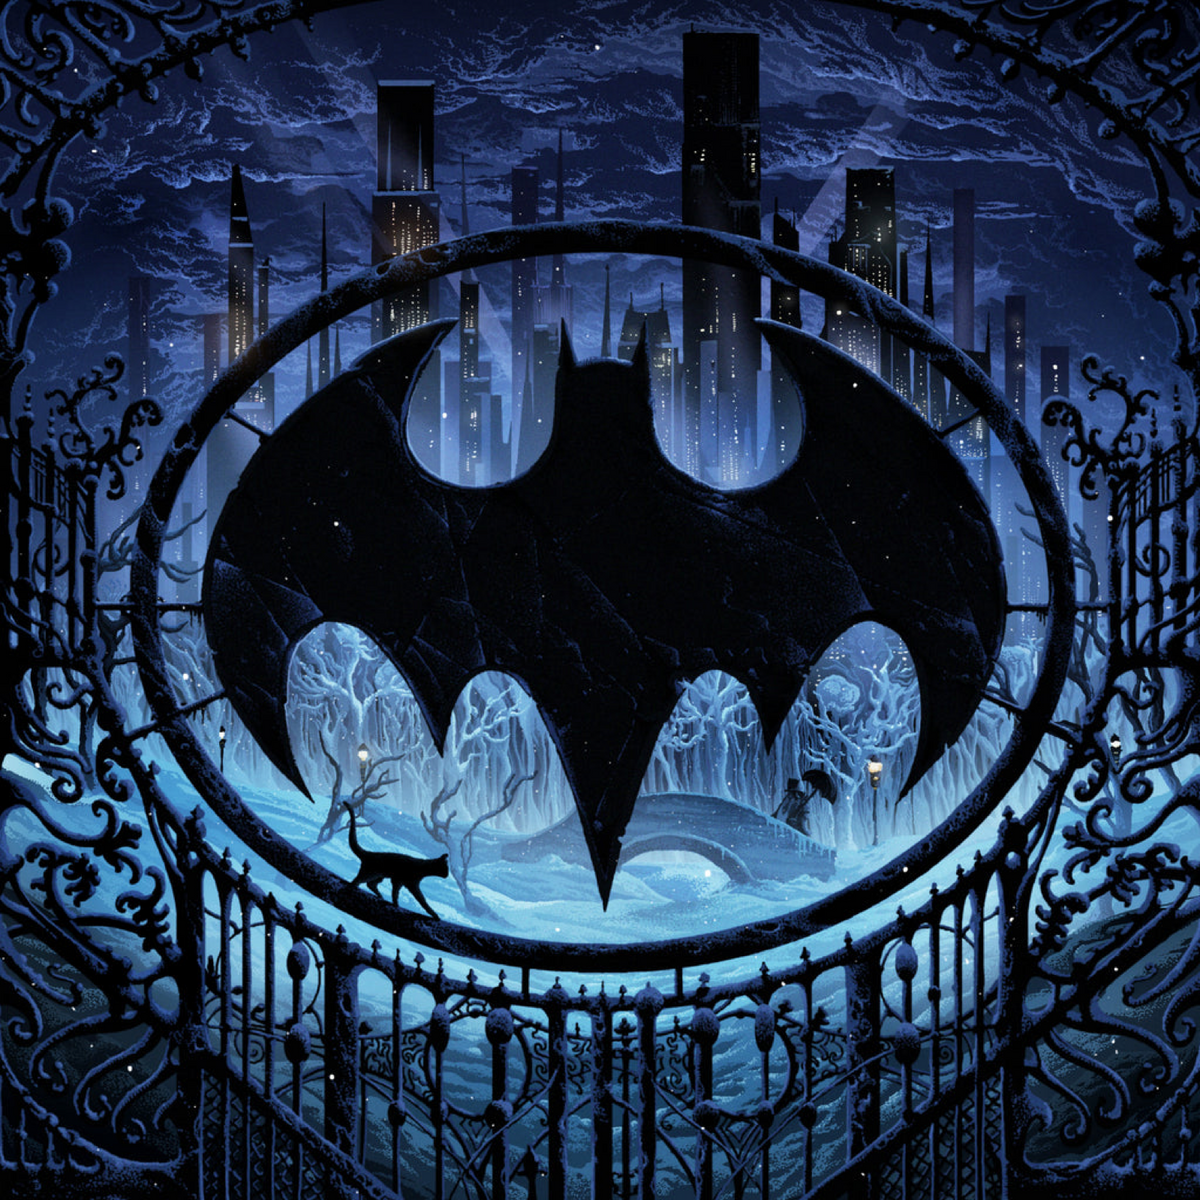 batman begins logo png